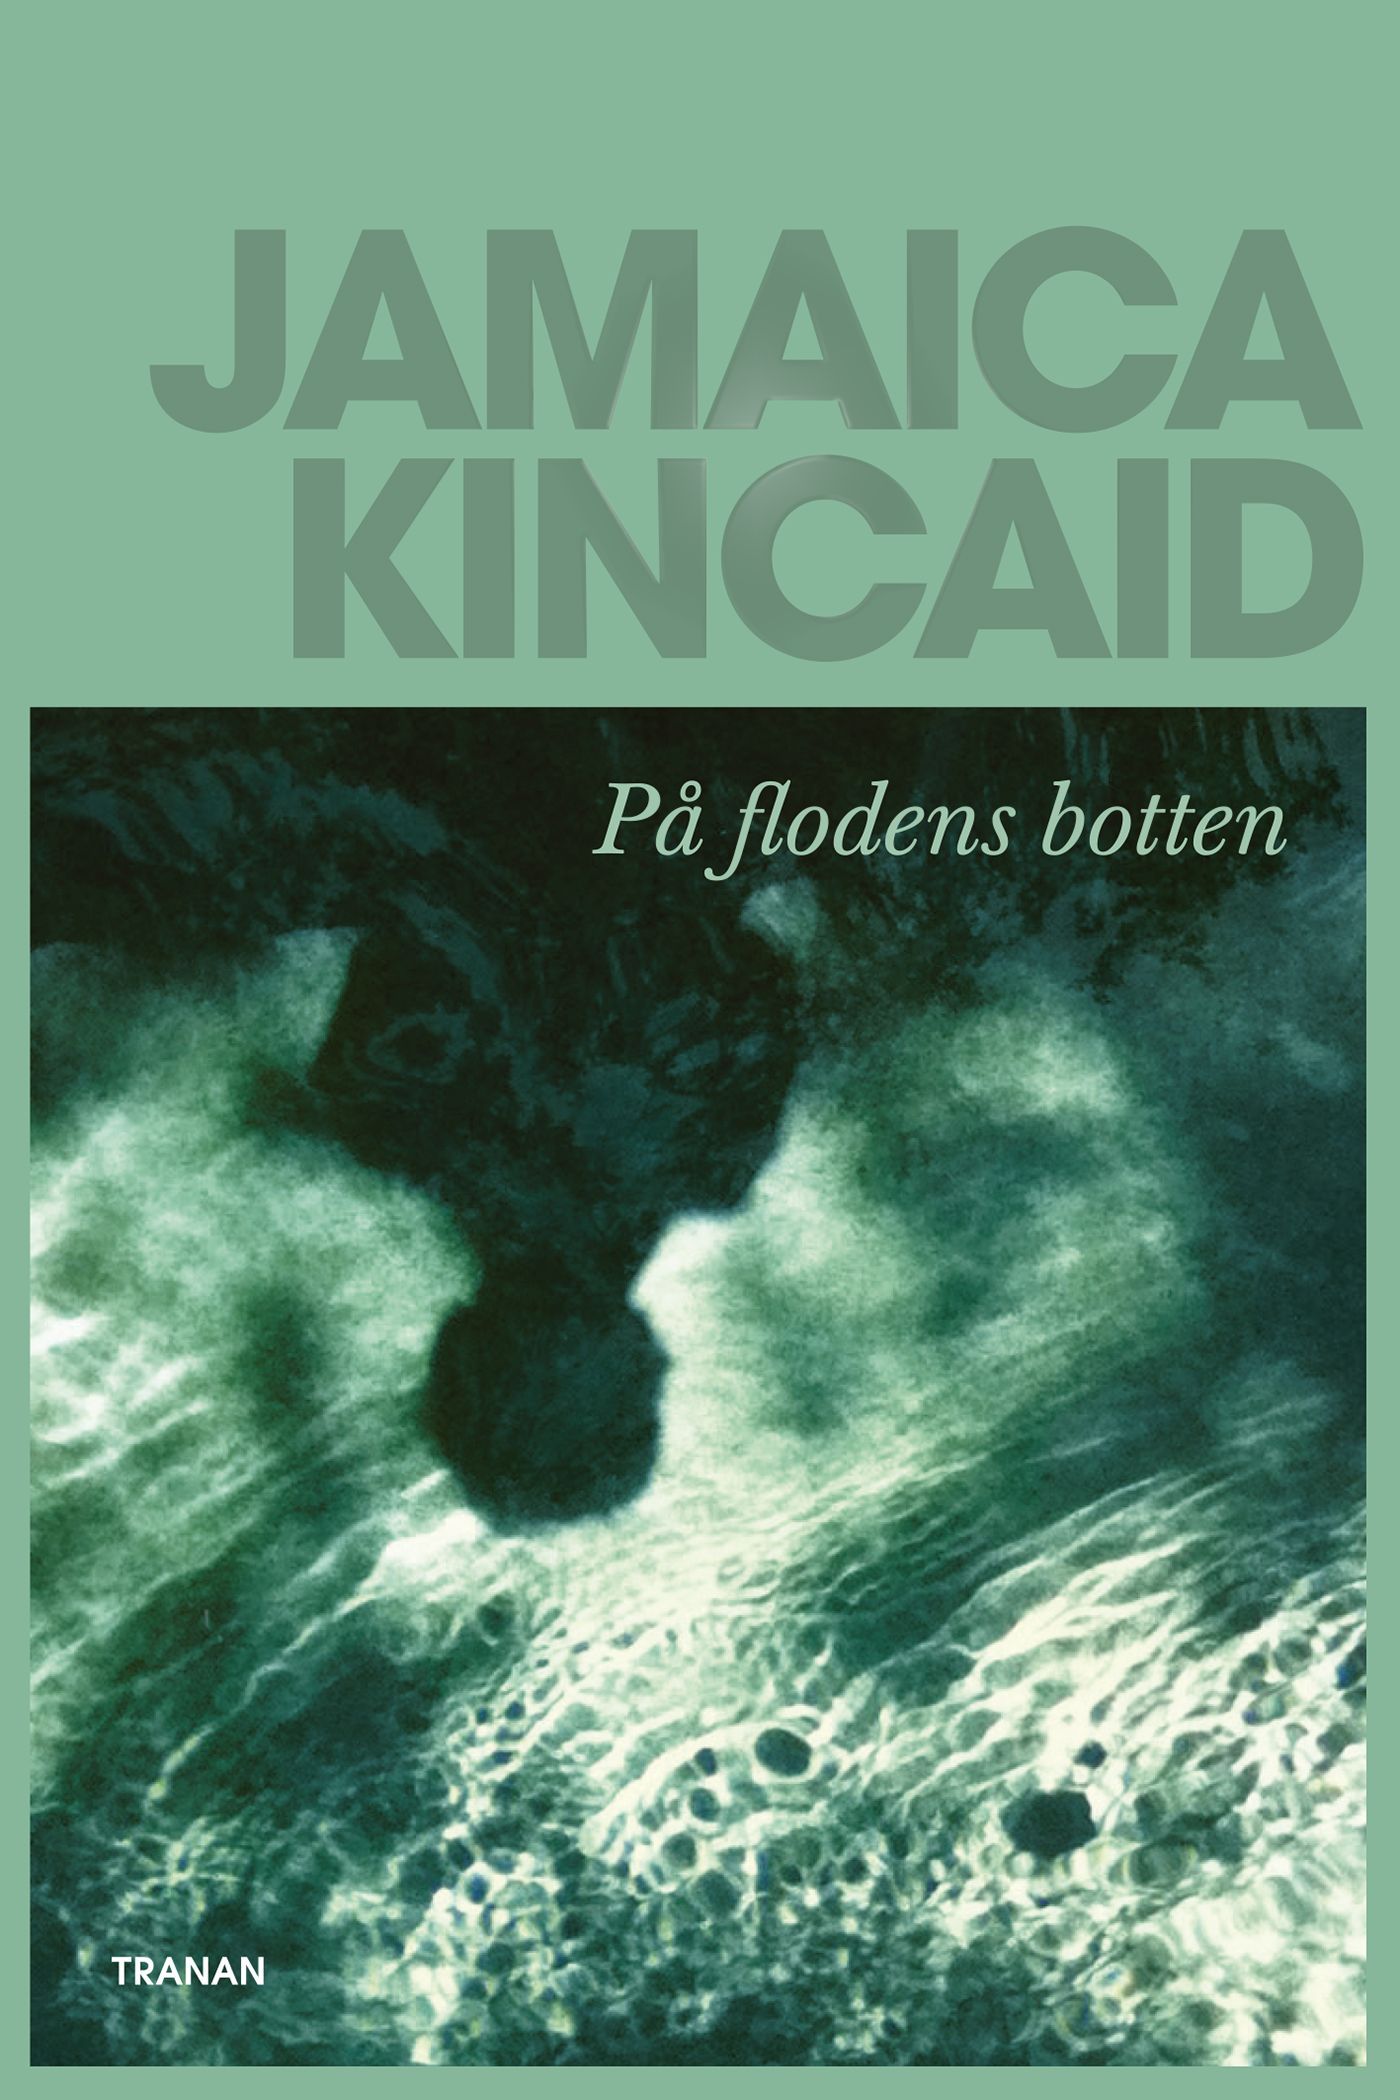 På flodens botten, e-bok av Jamaica Kincaid